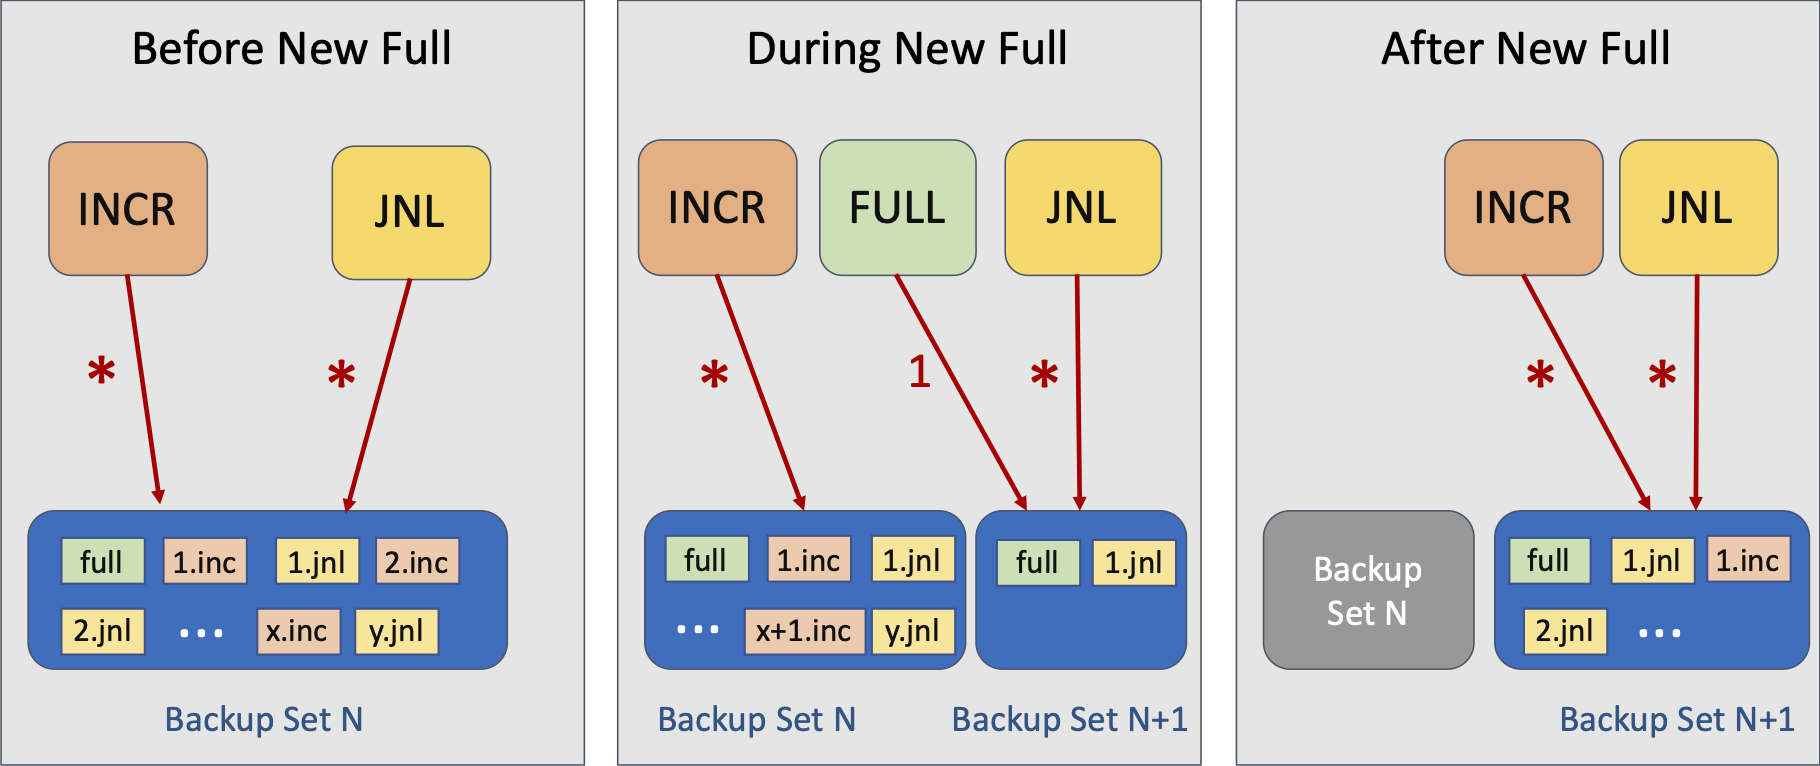 Backup Set Workflow